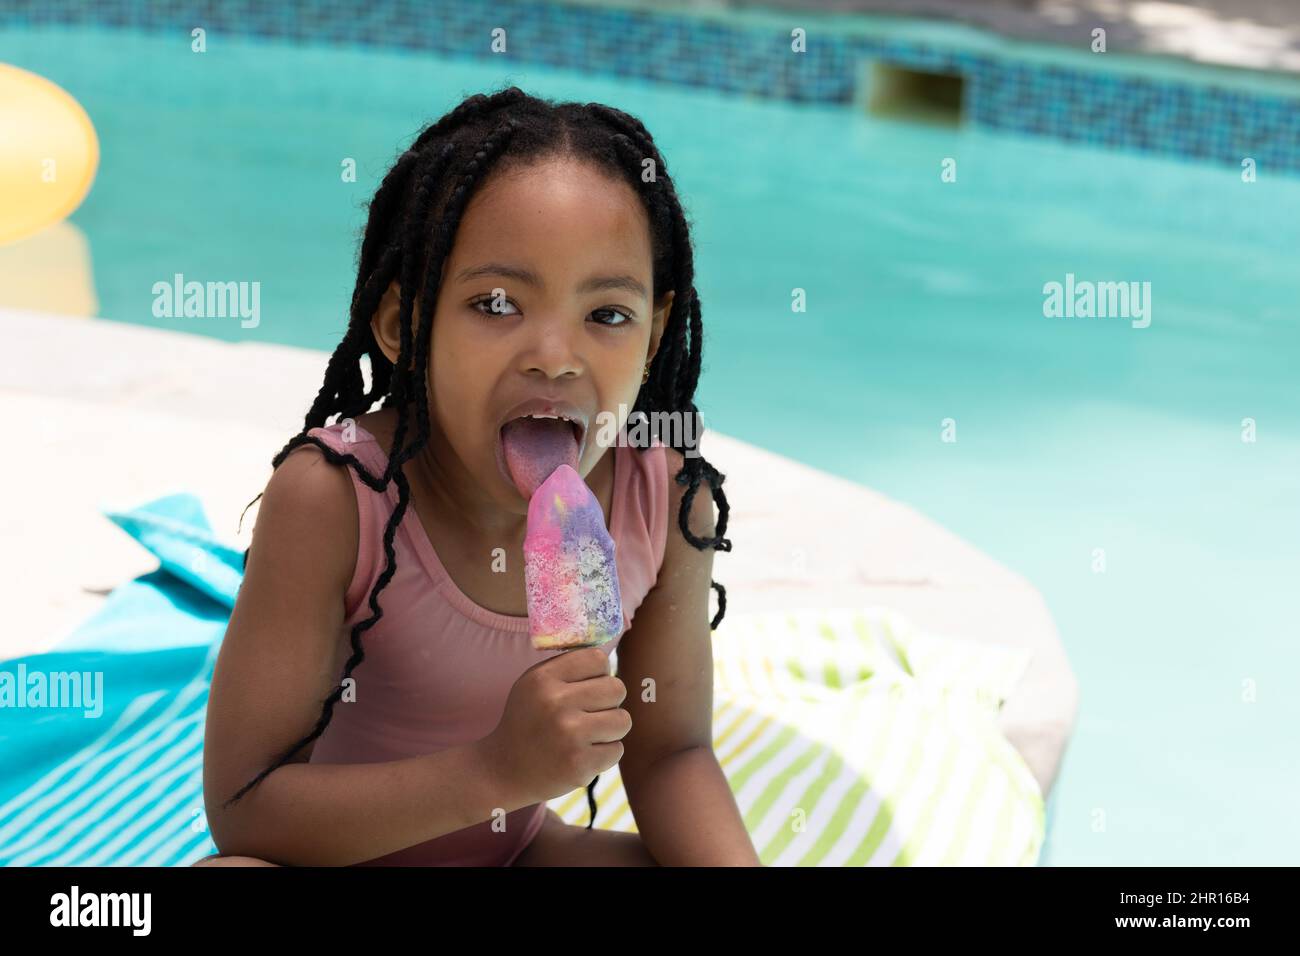 Ritratto di ragazza afroamericana carina mangiare gelato mentre si siede a bordo piscina in giorno di sole Foto Stock